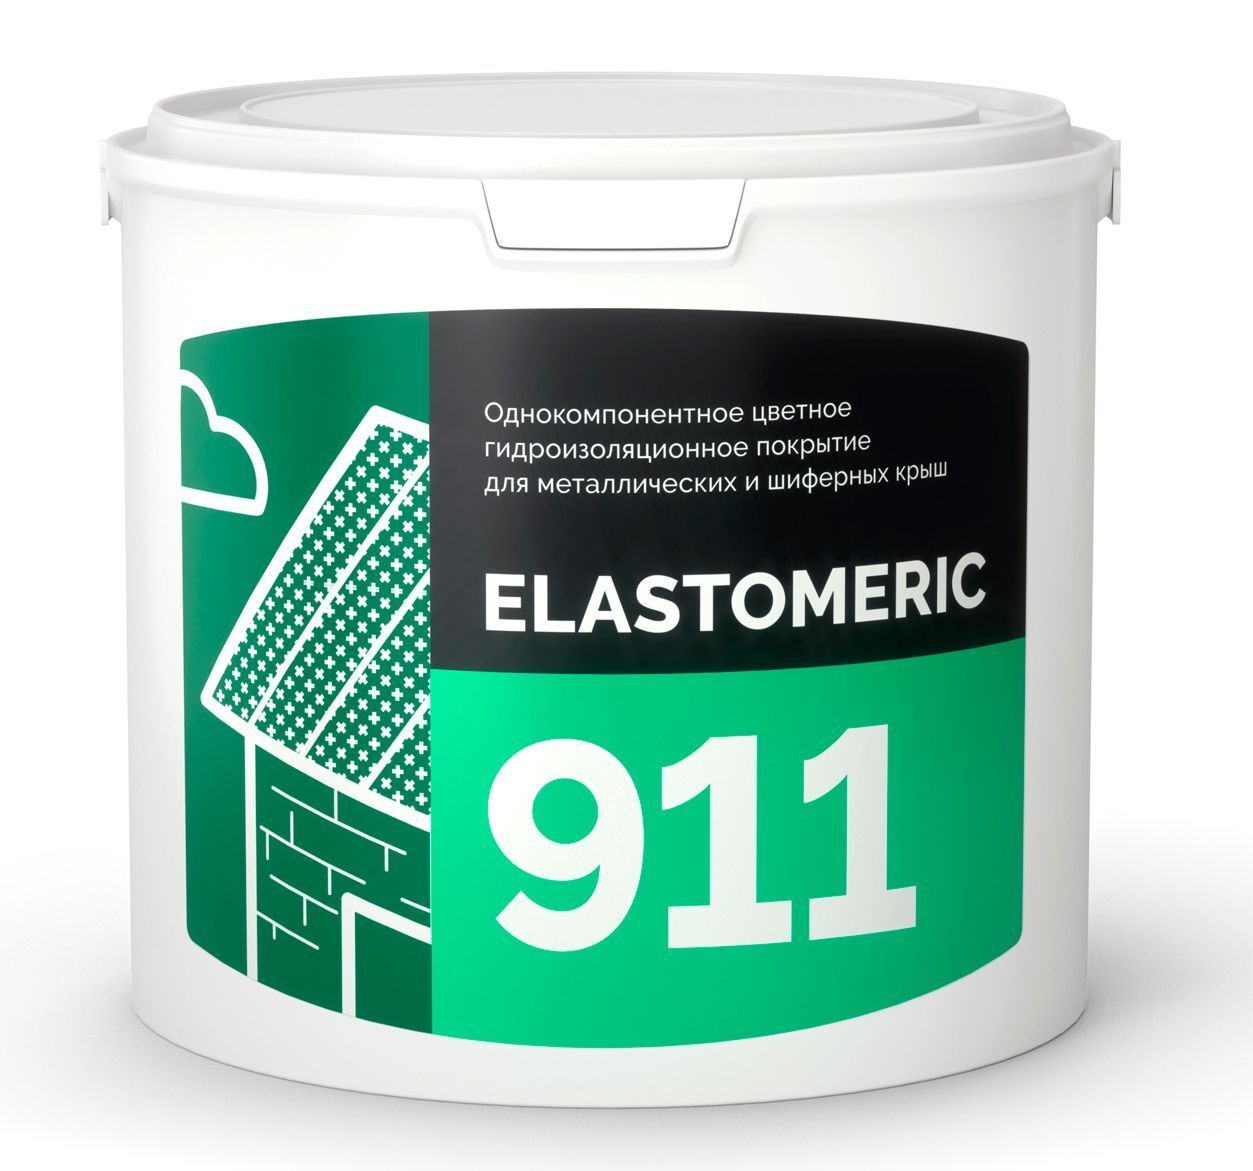 Гидроизоляция металлической и шиферной кровли - ELASTOMERIC 911 3 кг RAL 5005 сигнально-синий